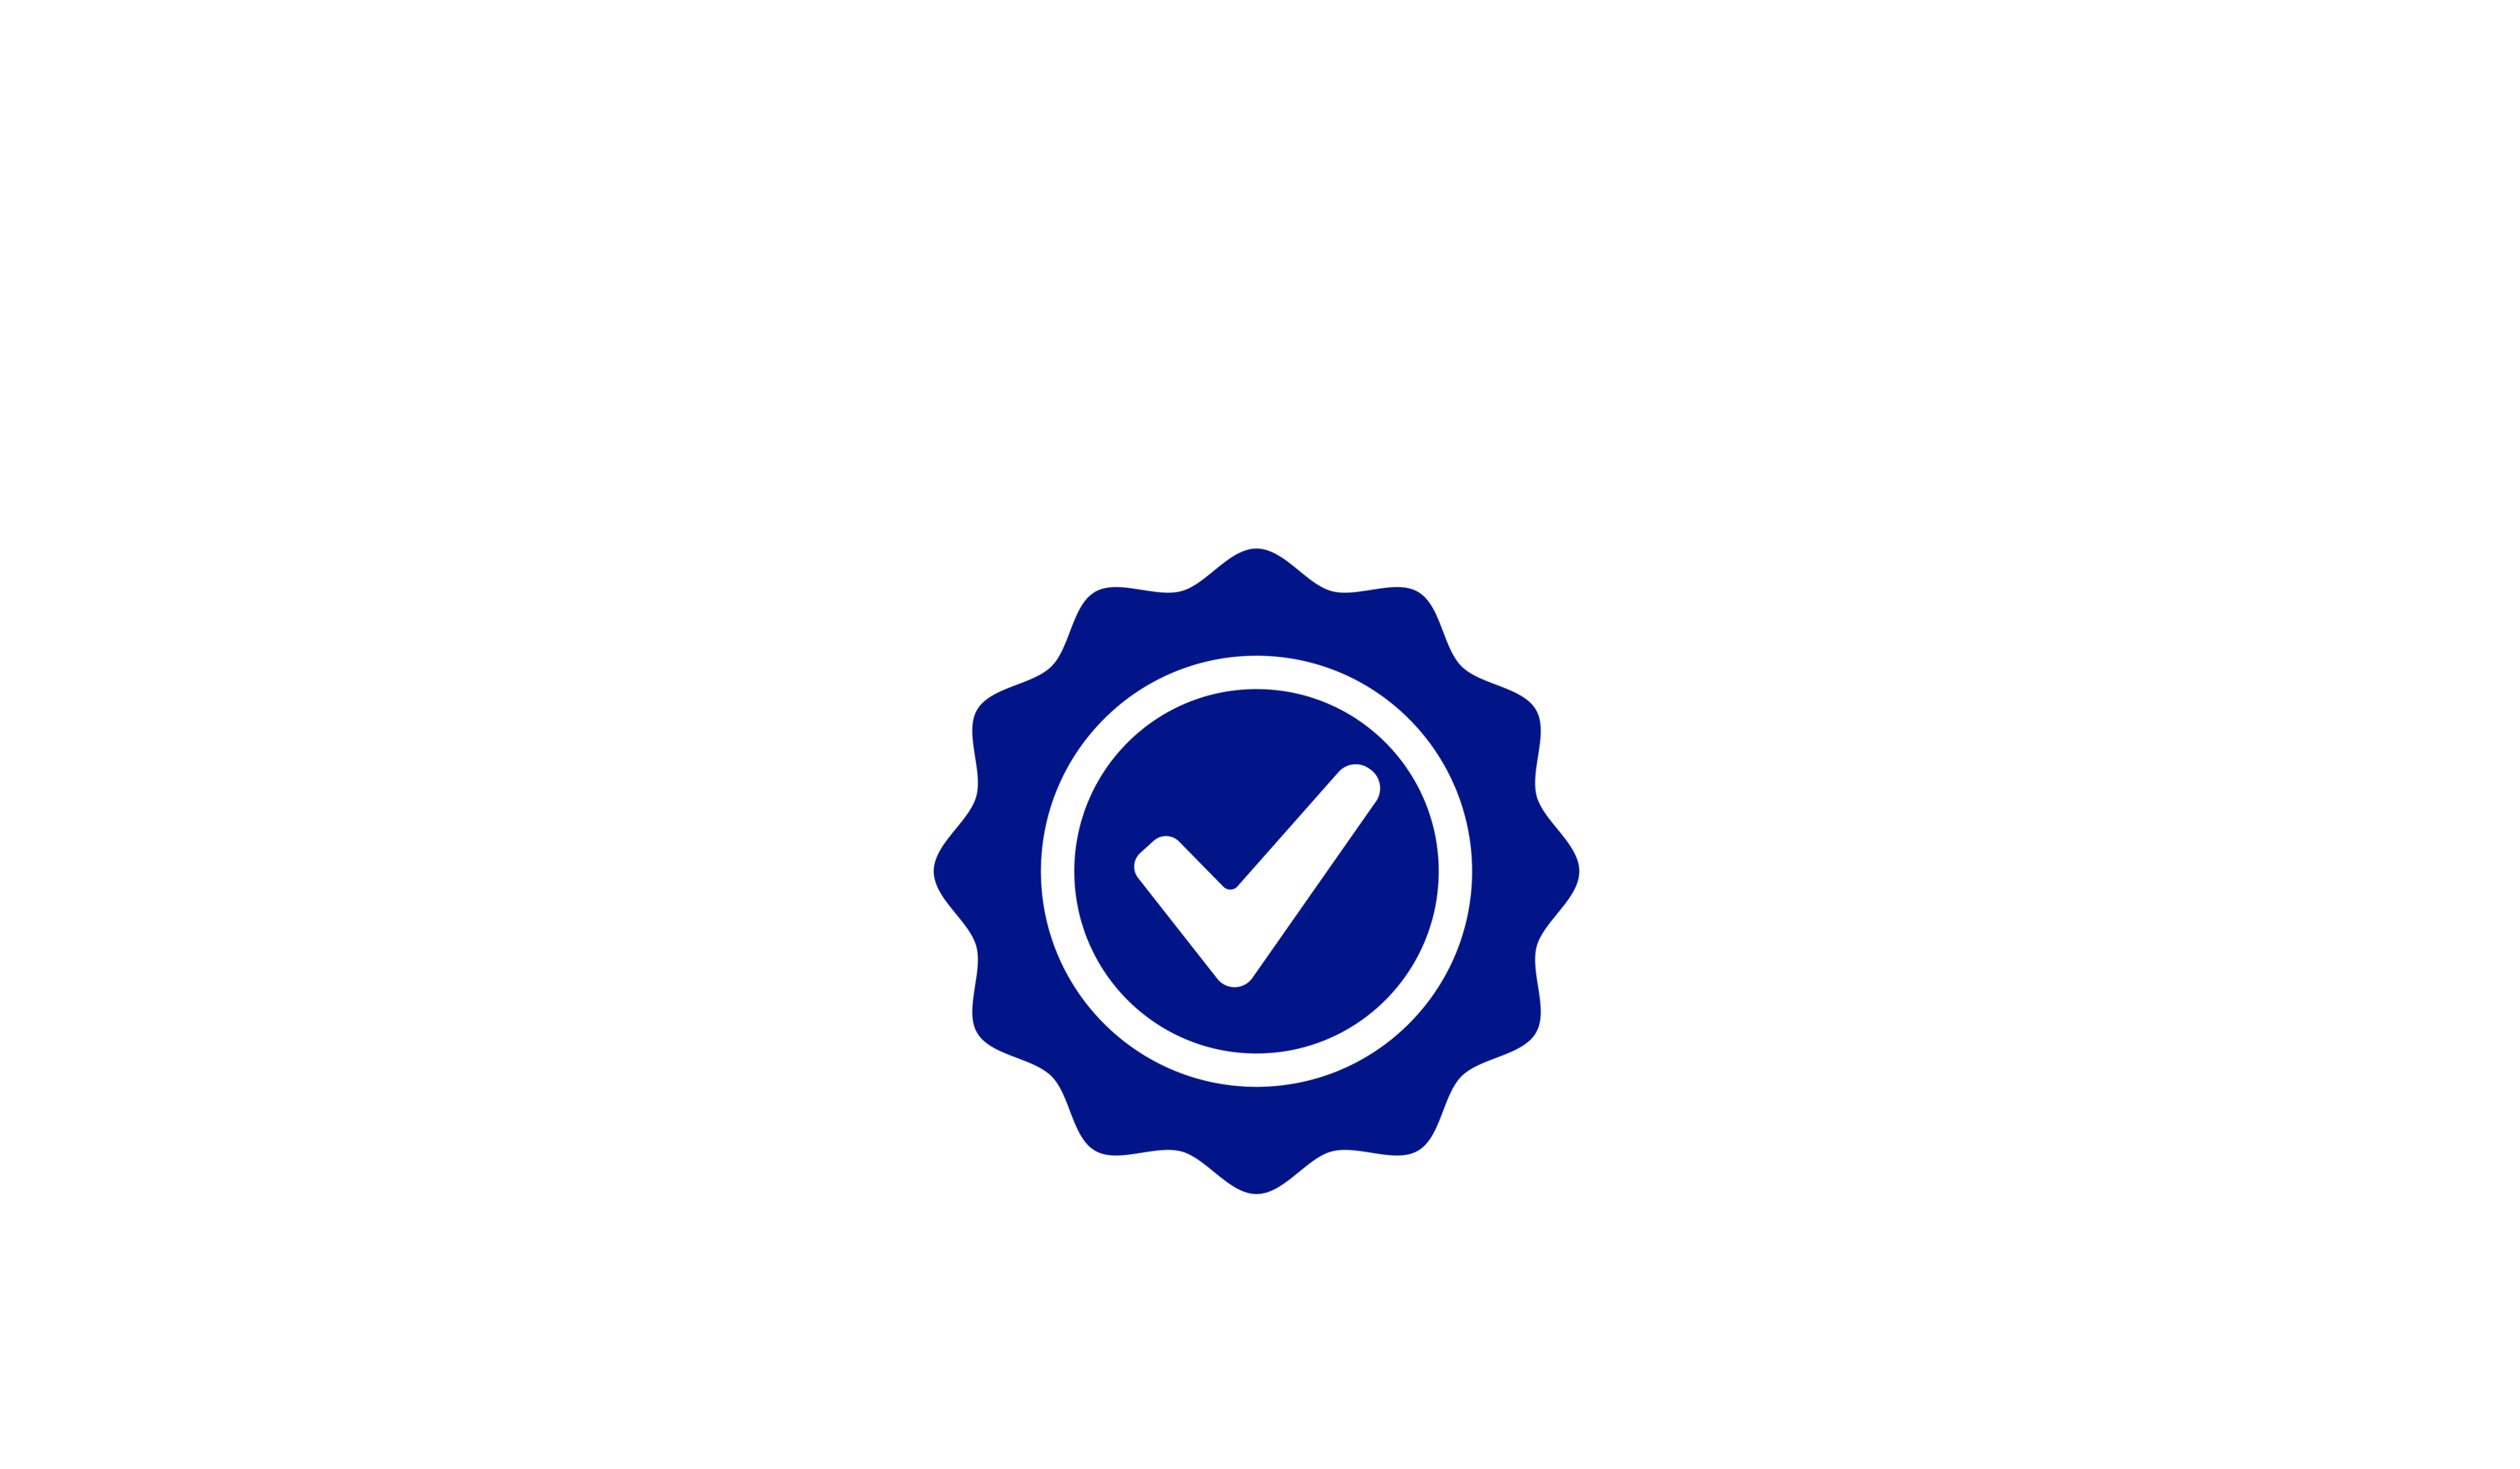 logotipo de la marca de verificación